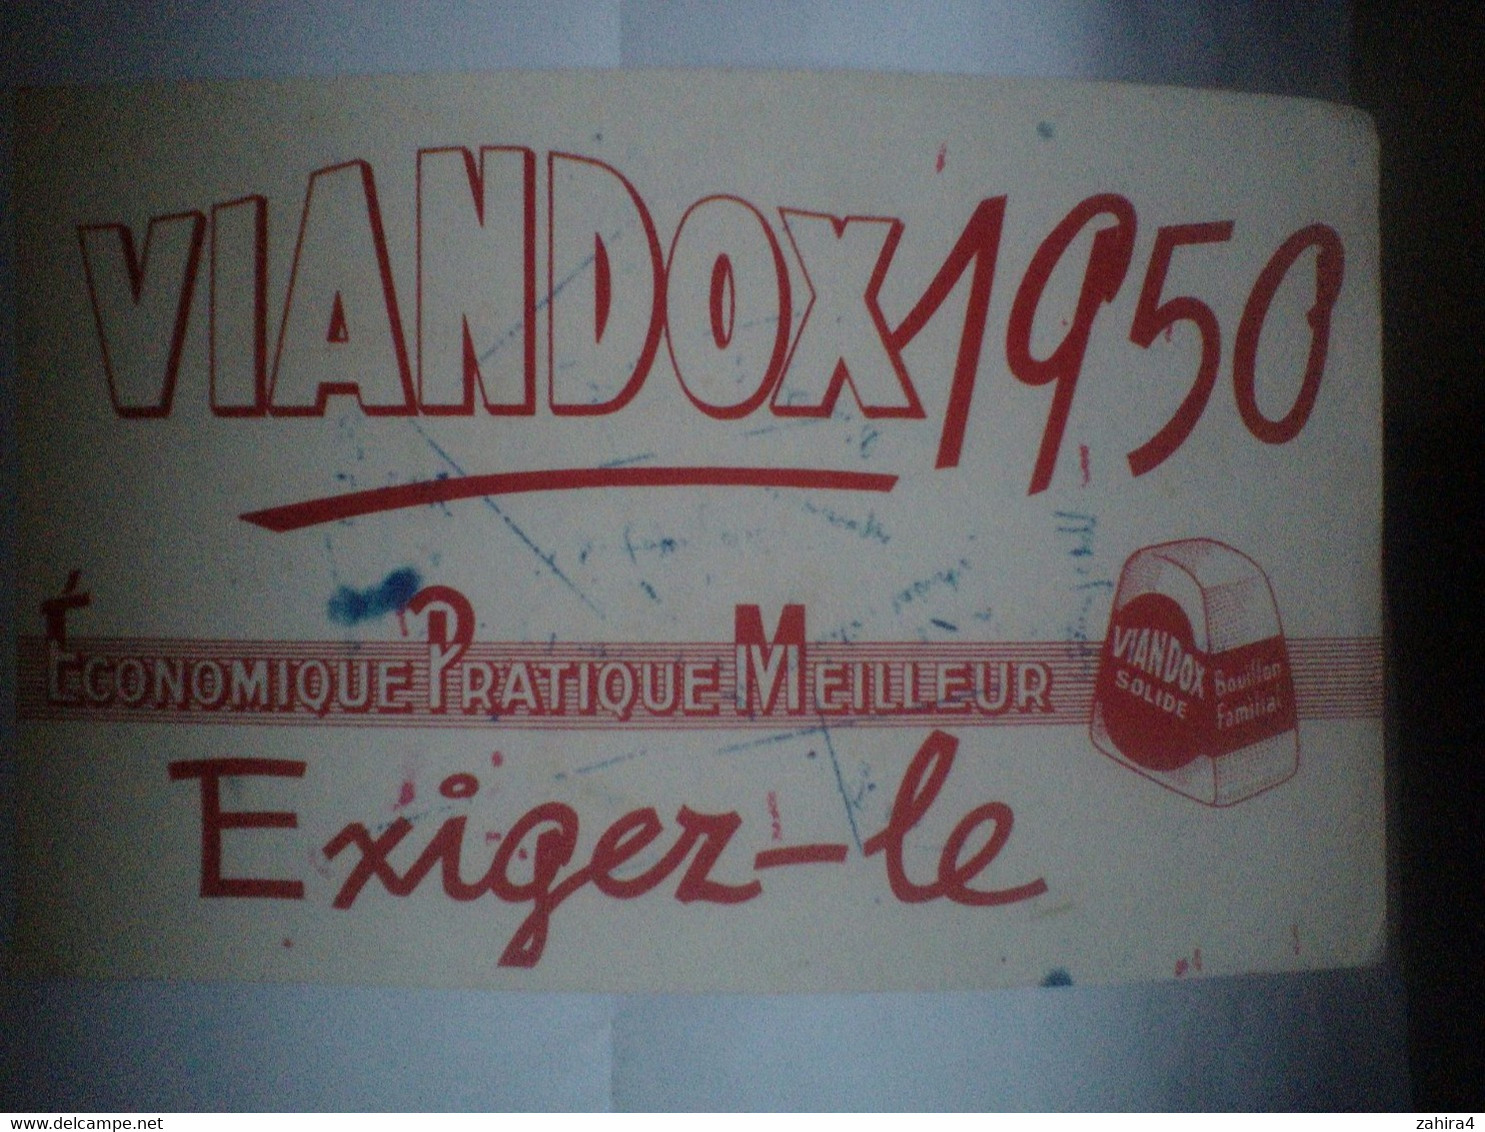 Viandox 1950 - Economique Pratique Meilleur - Exiger-le - Bouillon Familial - Soups & Sauces